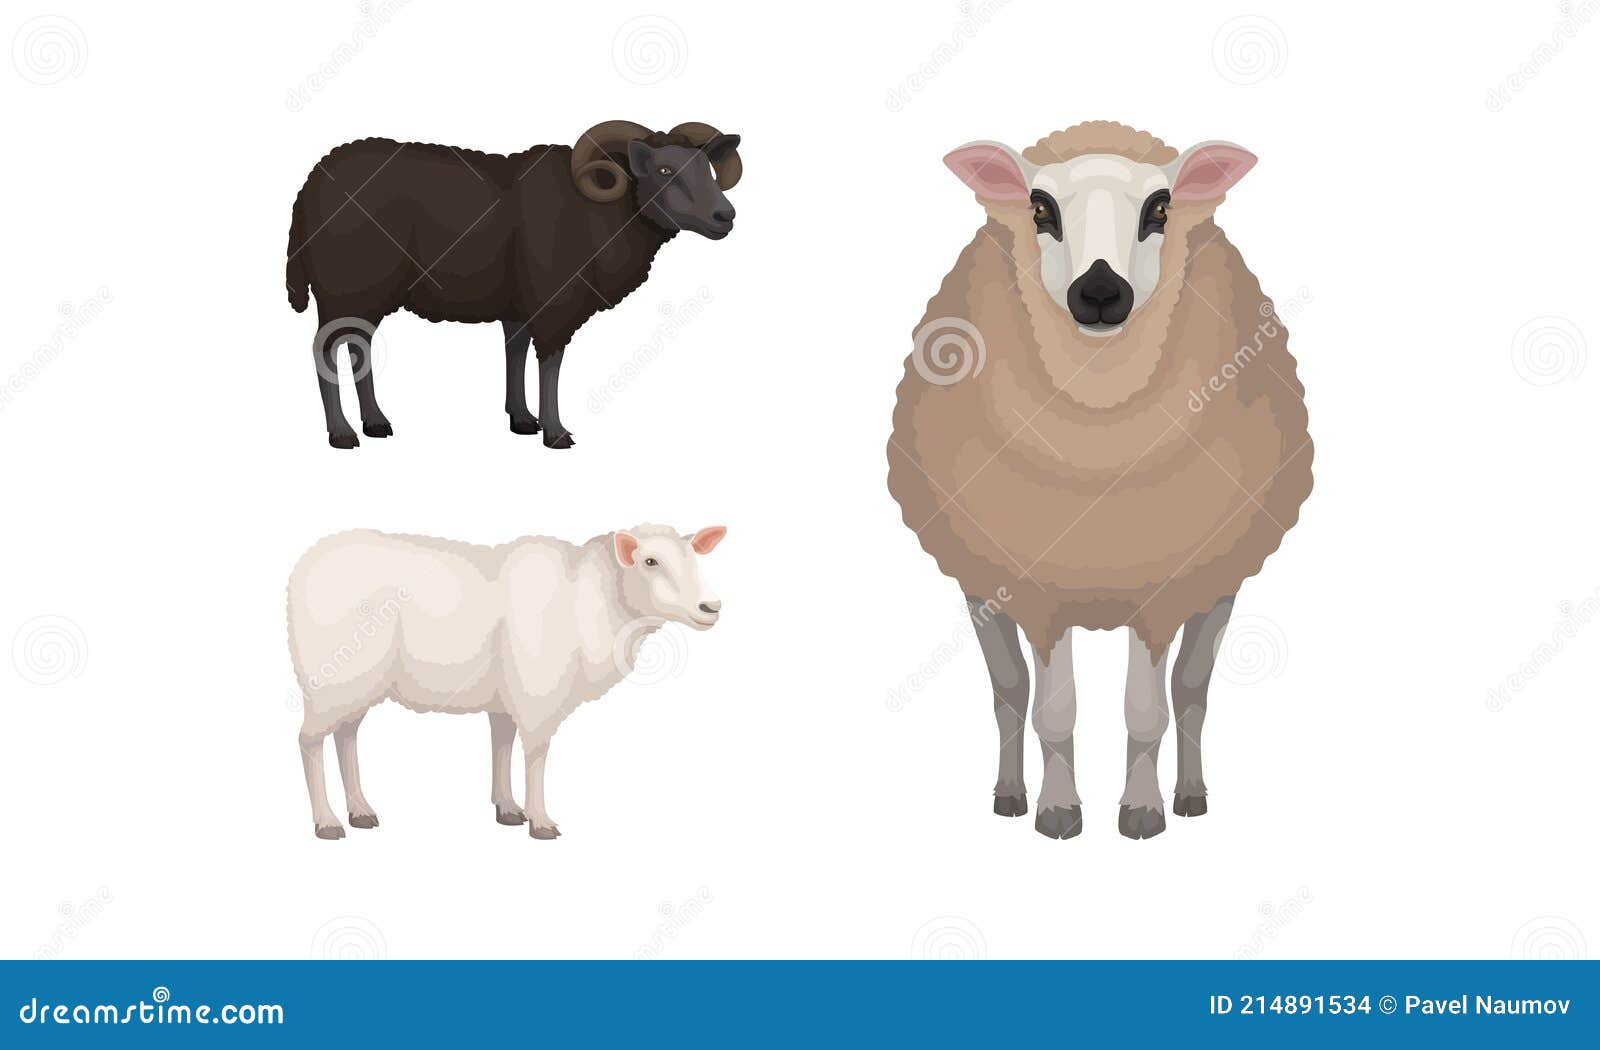 sheep as ruminant domestic mammal kept as livestock  set